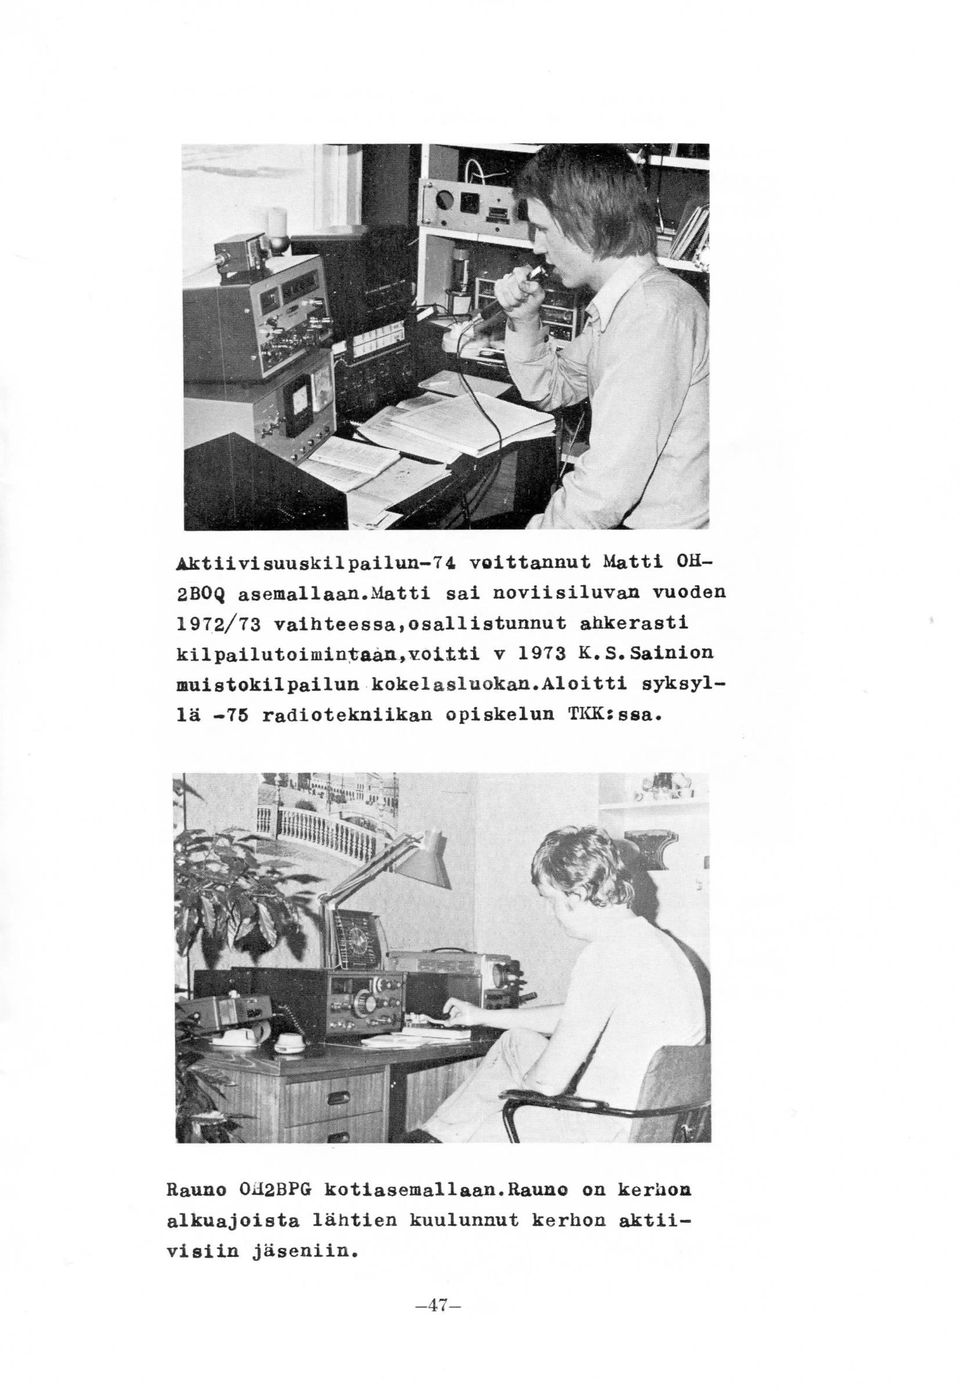 kilpailutoimintaan,vottti v 1973 K.S.Sainion muistokilpailun kokelasluokan.